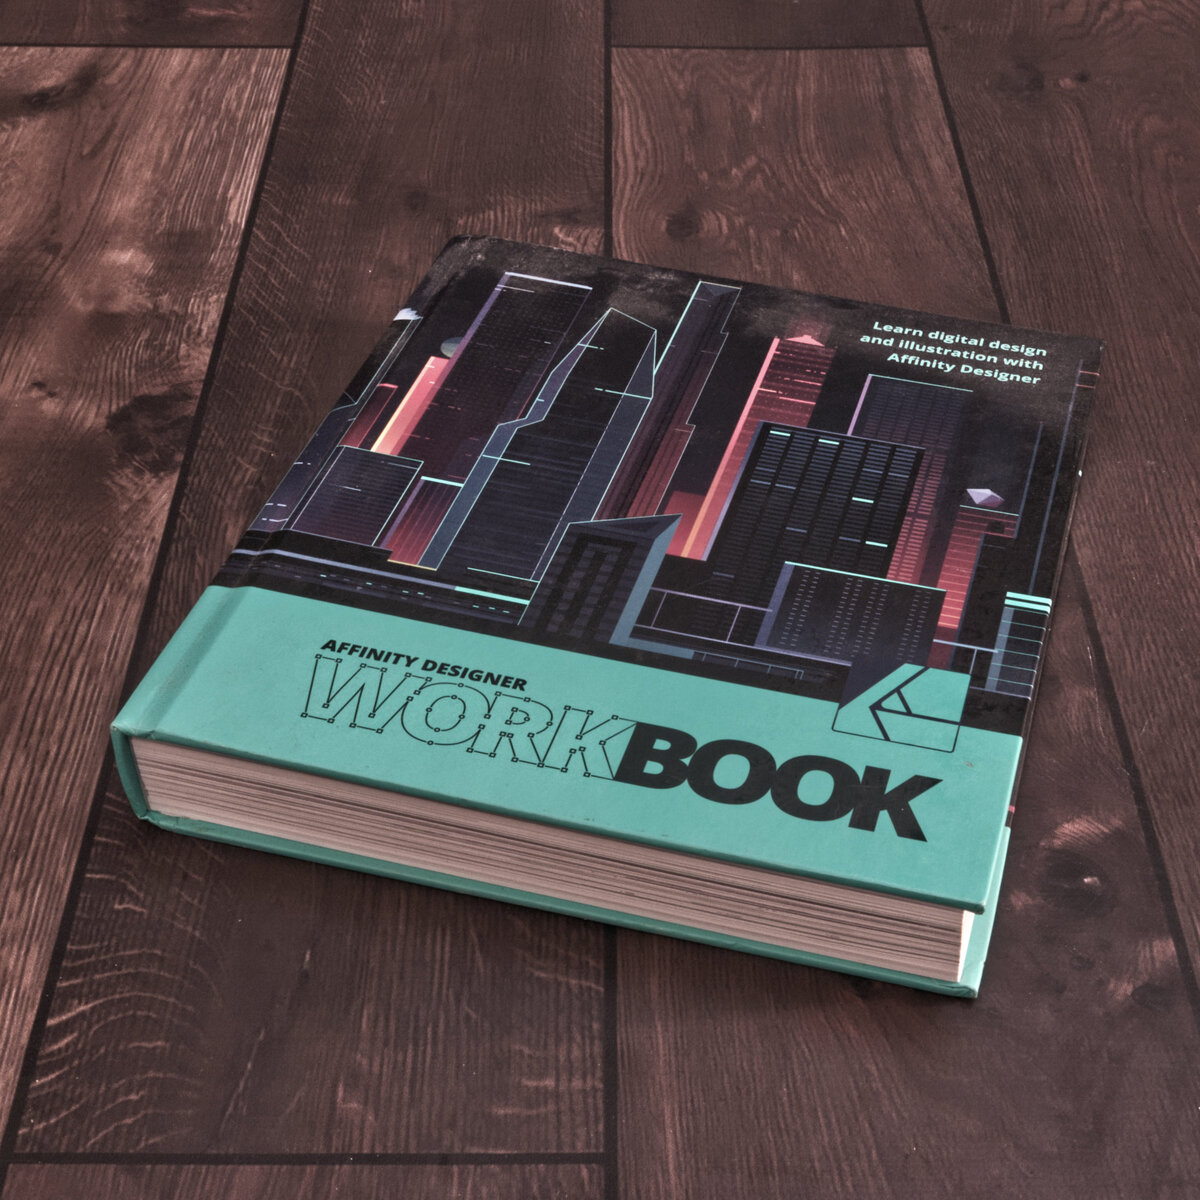 Affinity Designer Work Book